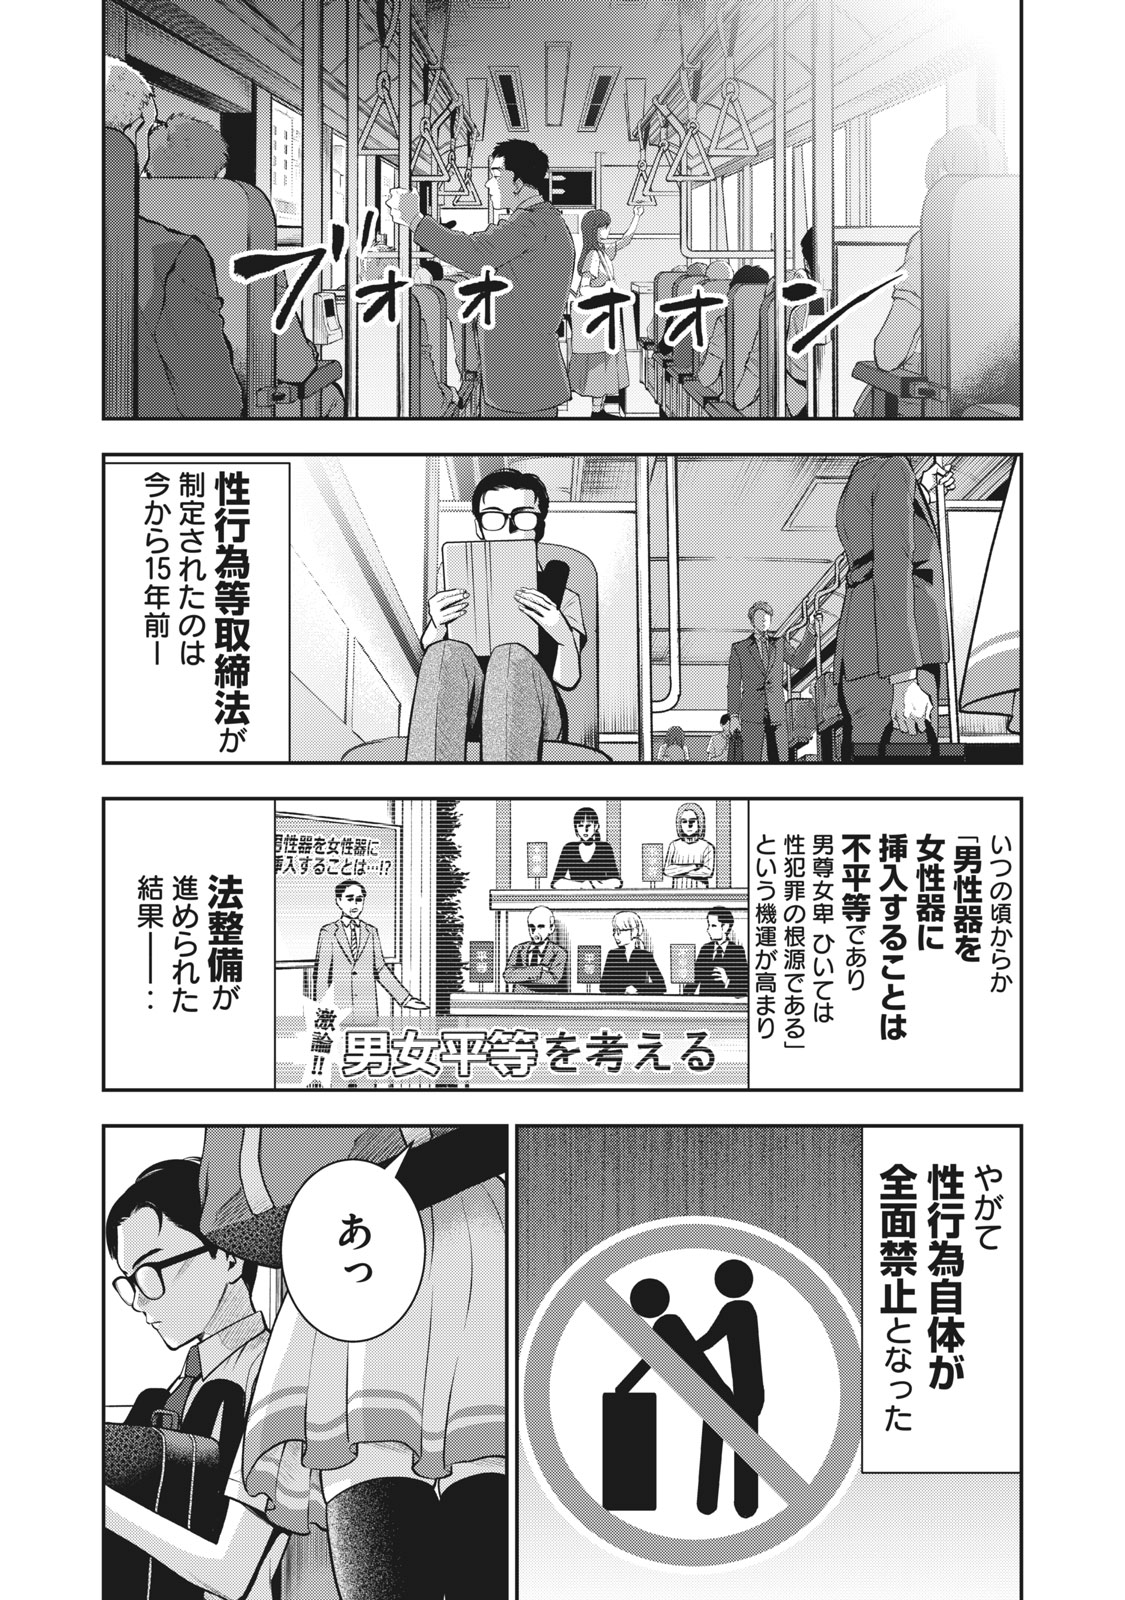 Sexが禁じられた日本 性行為を蔑む優等生が目撃したのは 違法者たちの快楽の饗宴 今日のおすすめ 講談社コミックプラス